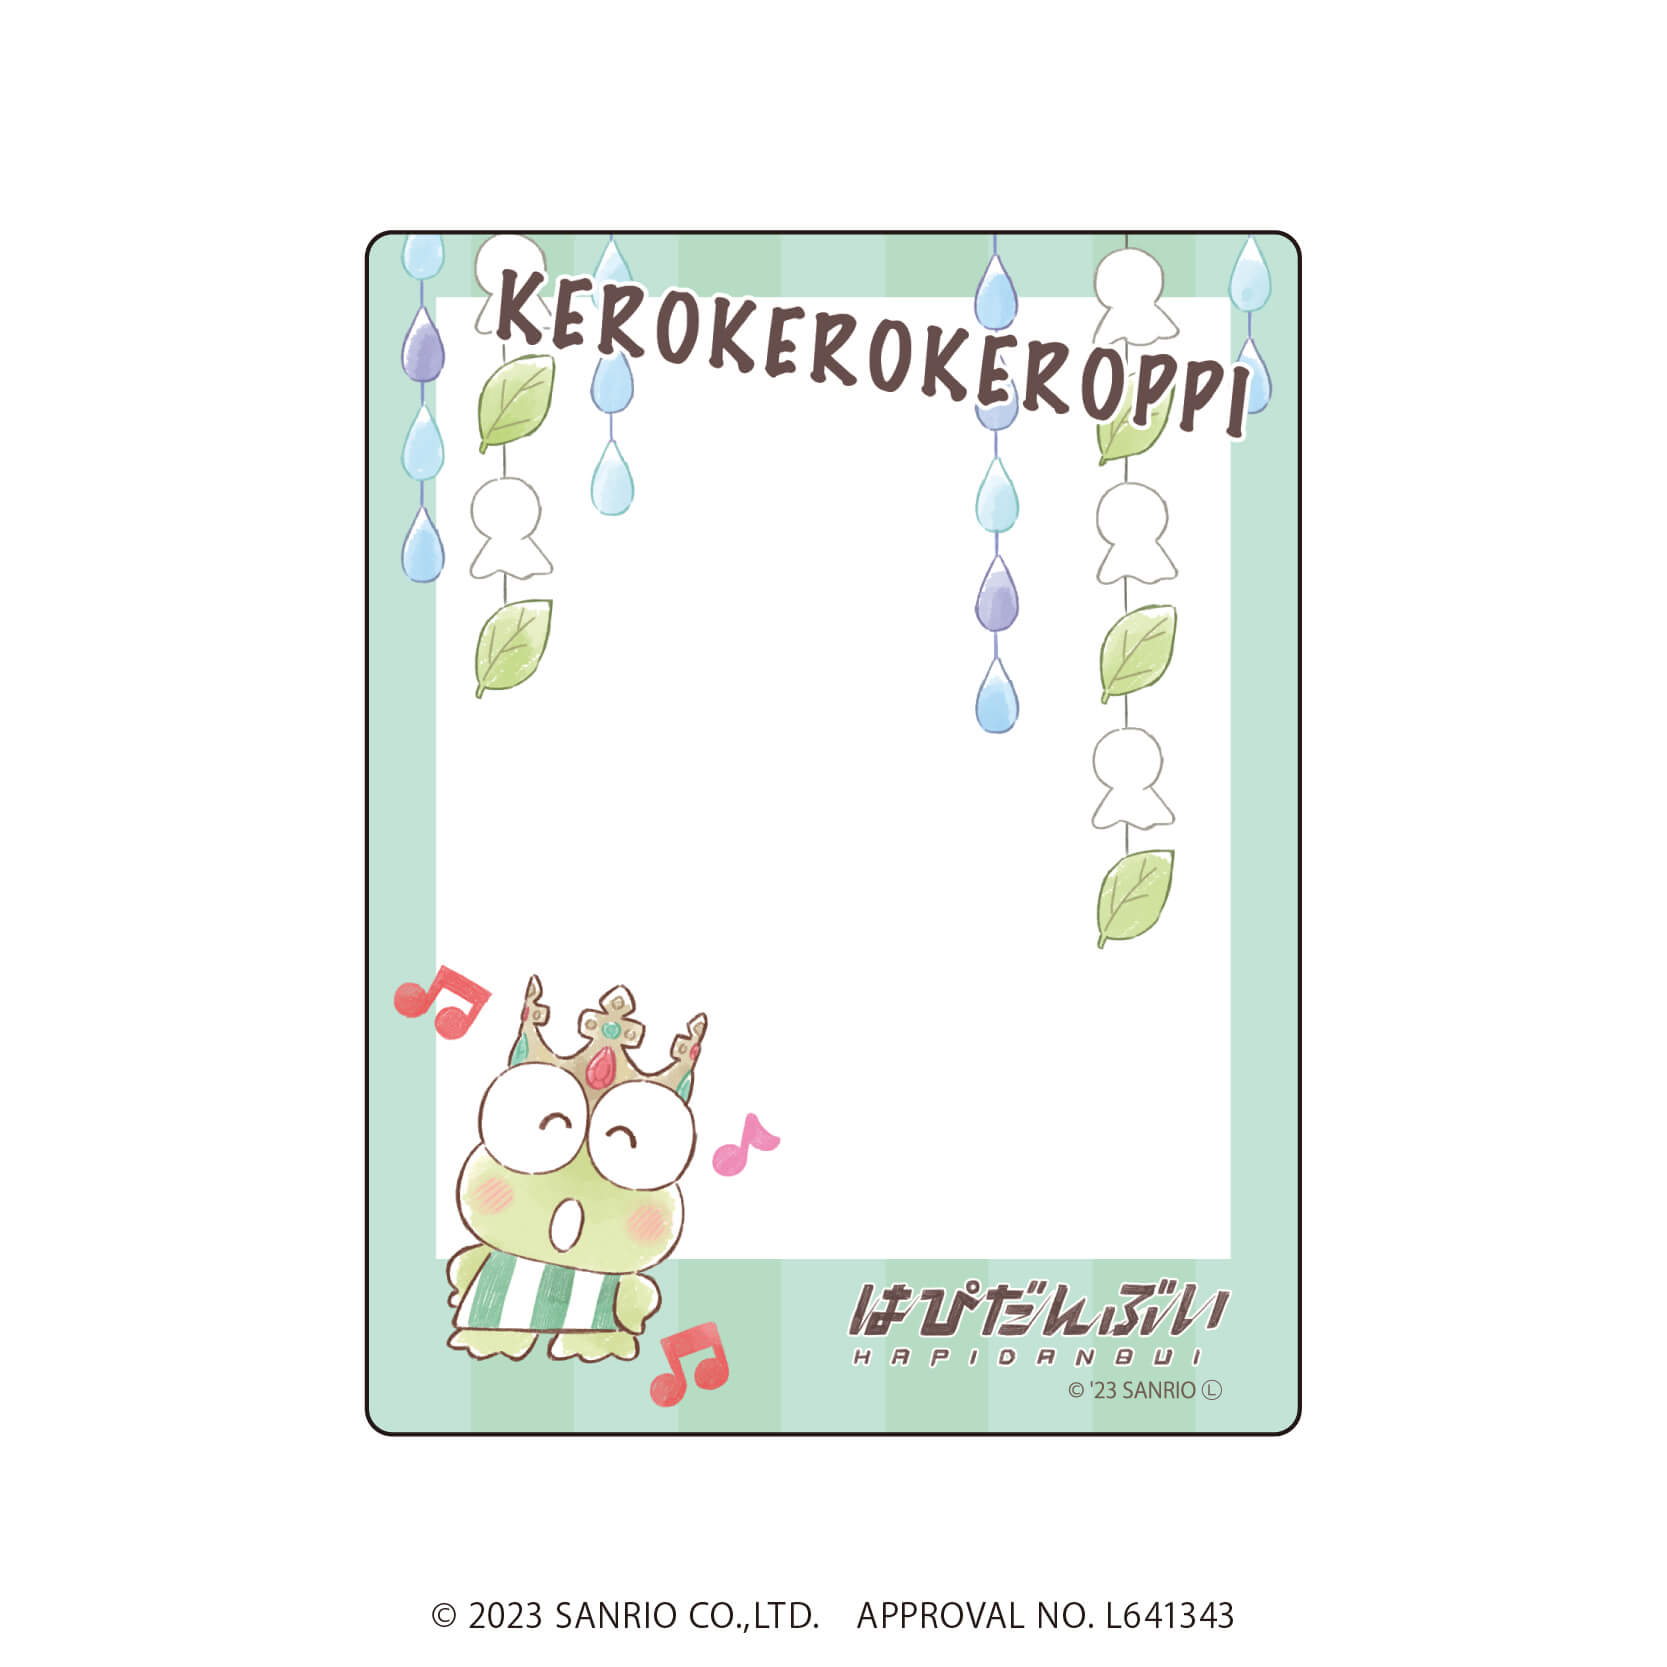 アクリルカード「はぴだんぶい」05/コンプリートBOX(全6種)(グラフアートイラスト)